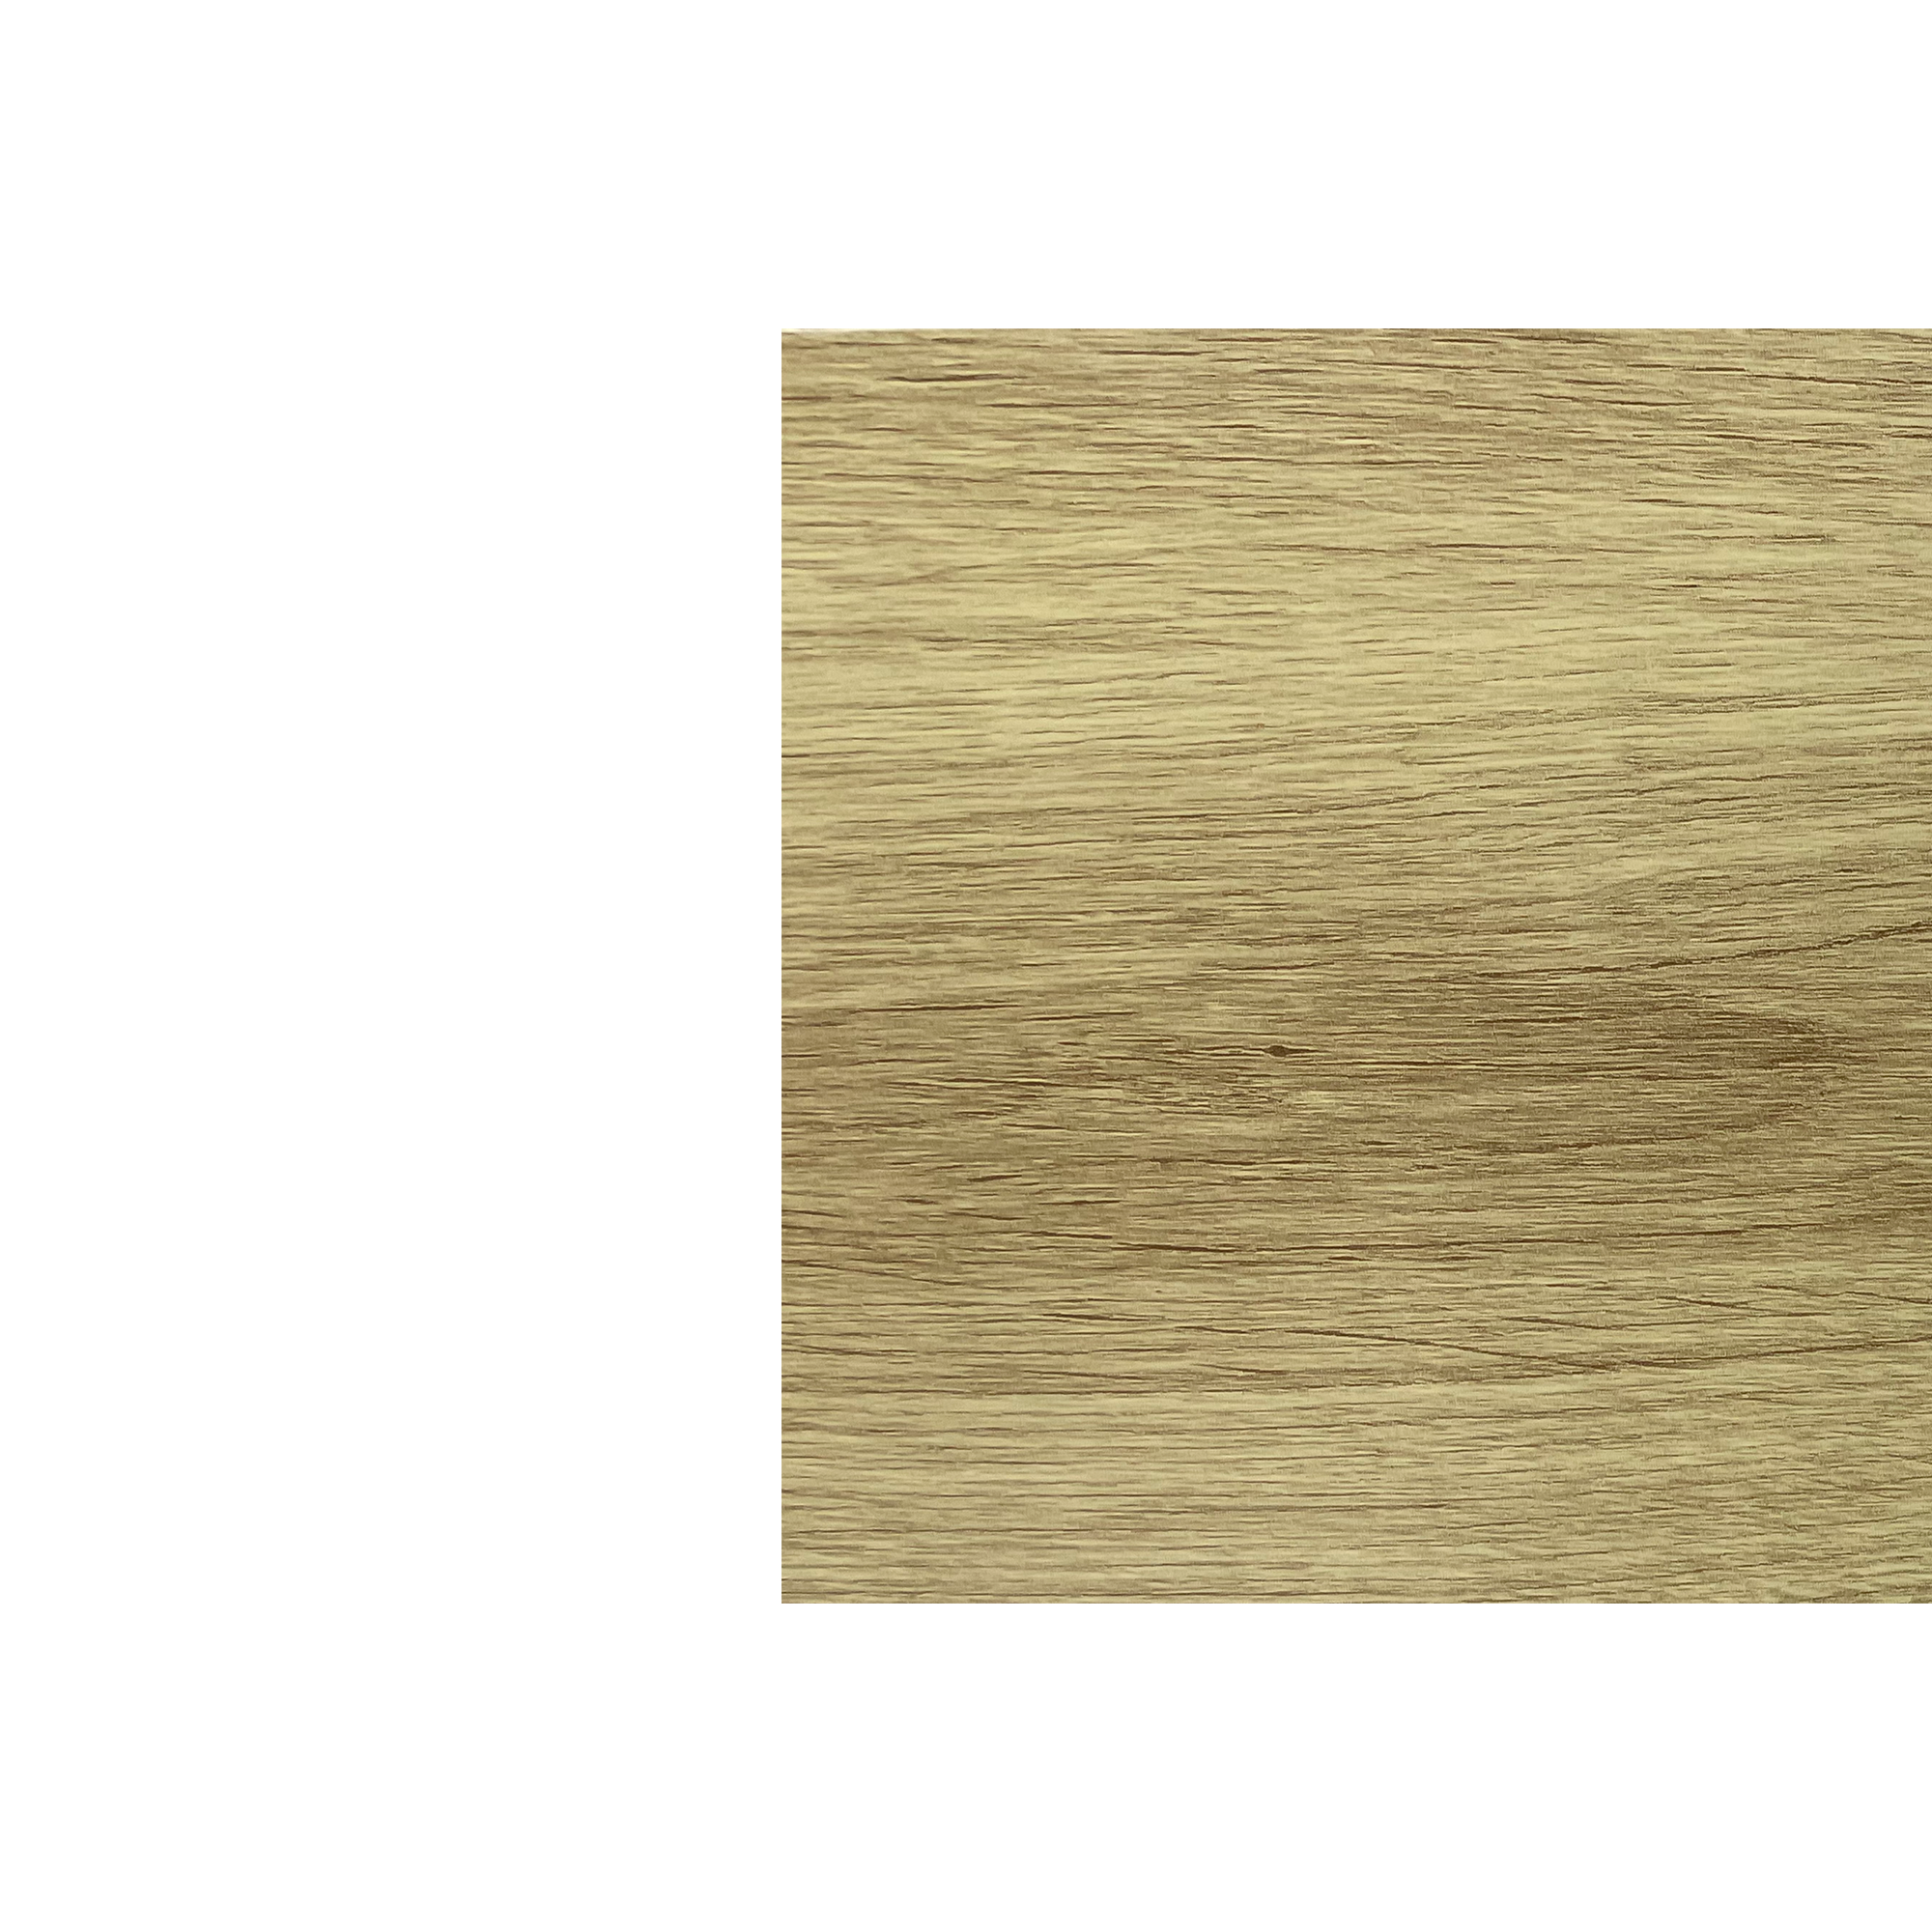 Планка угла наружного сложного Брусnika Золотая текила 0,45 мм Printech Доборные элементы для сайдинга Кровля Сервис